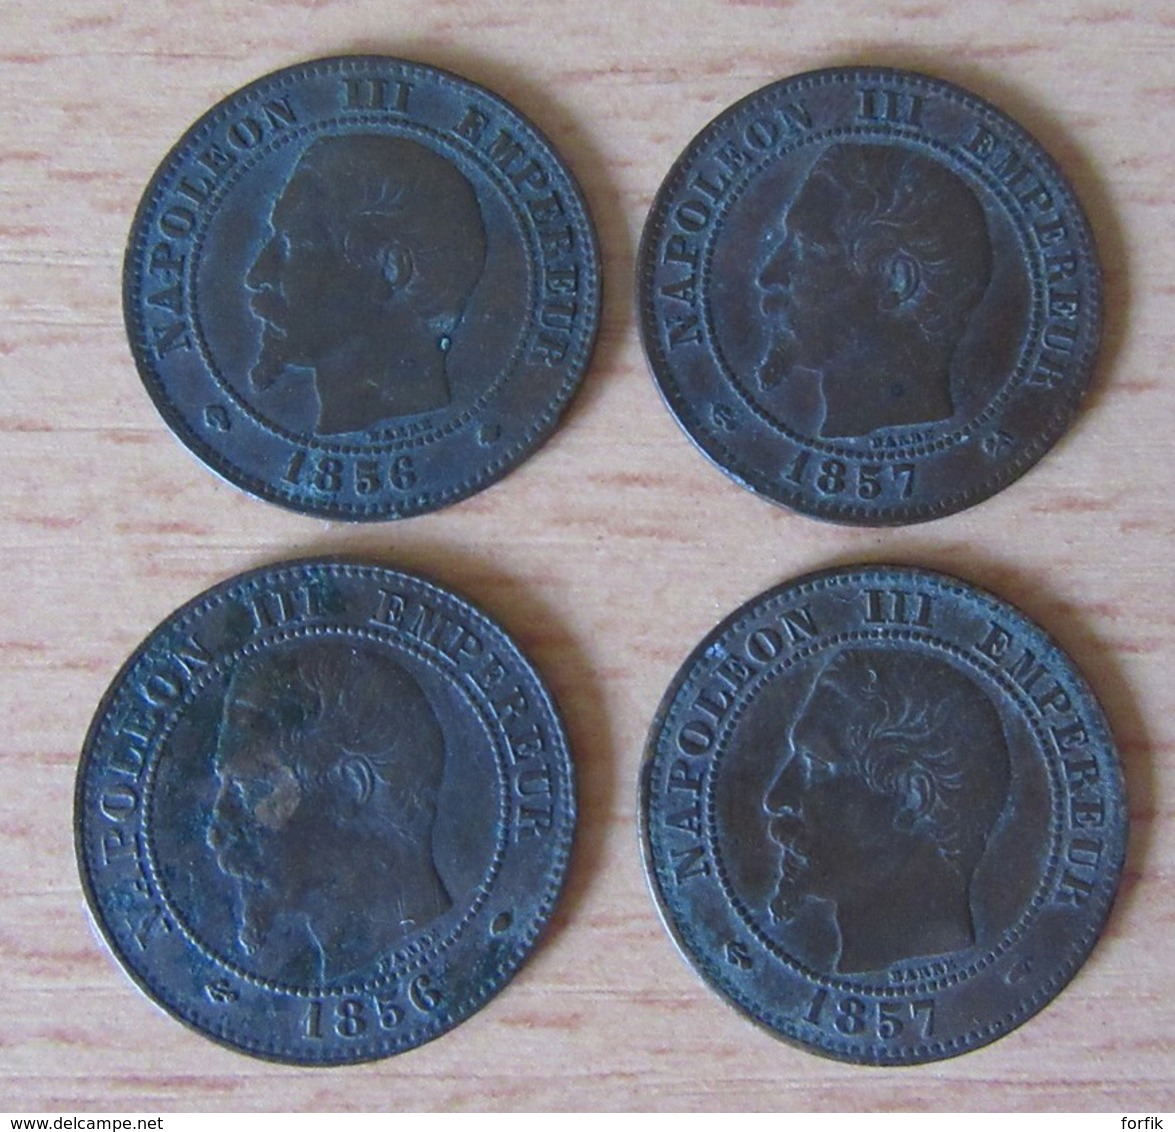 France - Petite collection de 24 monnaies 2 centimes Napoléon III et Cérès 1853 à 1895 - Détails dans la description